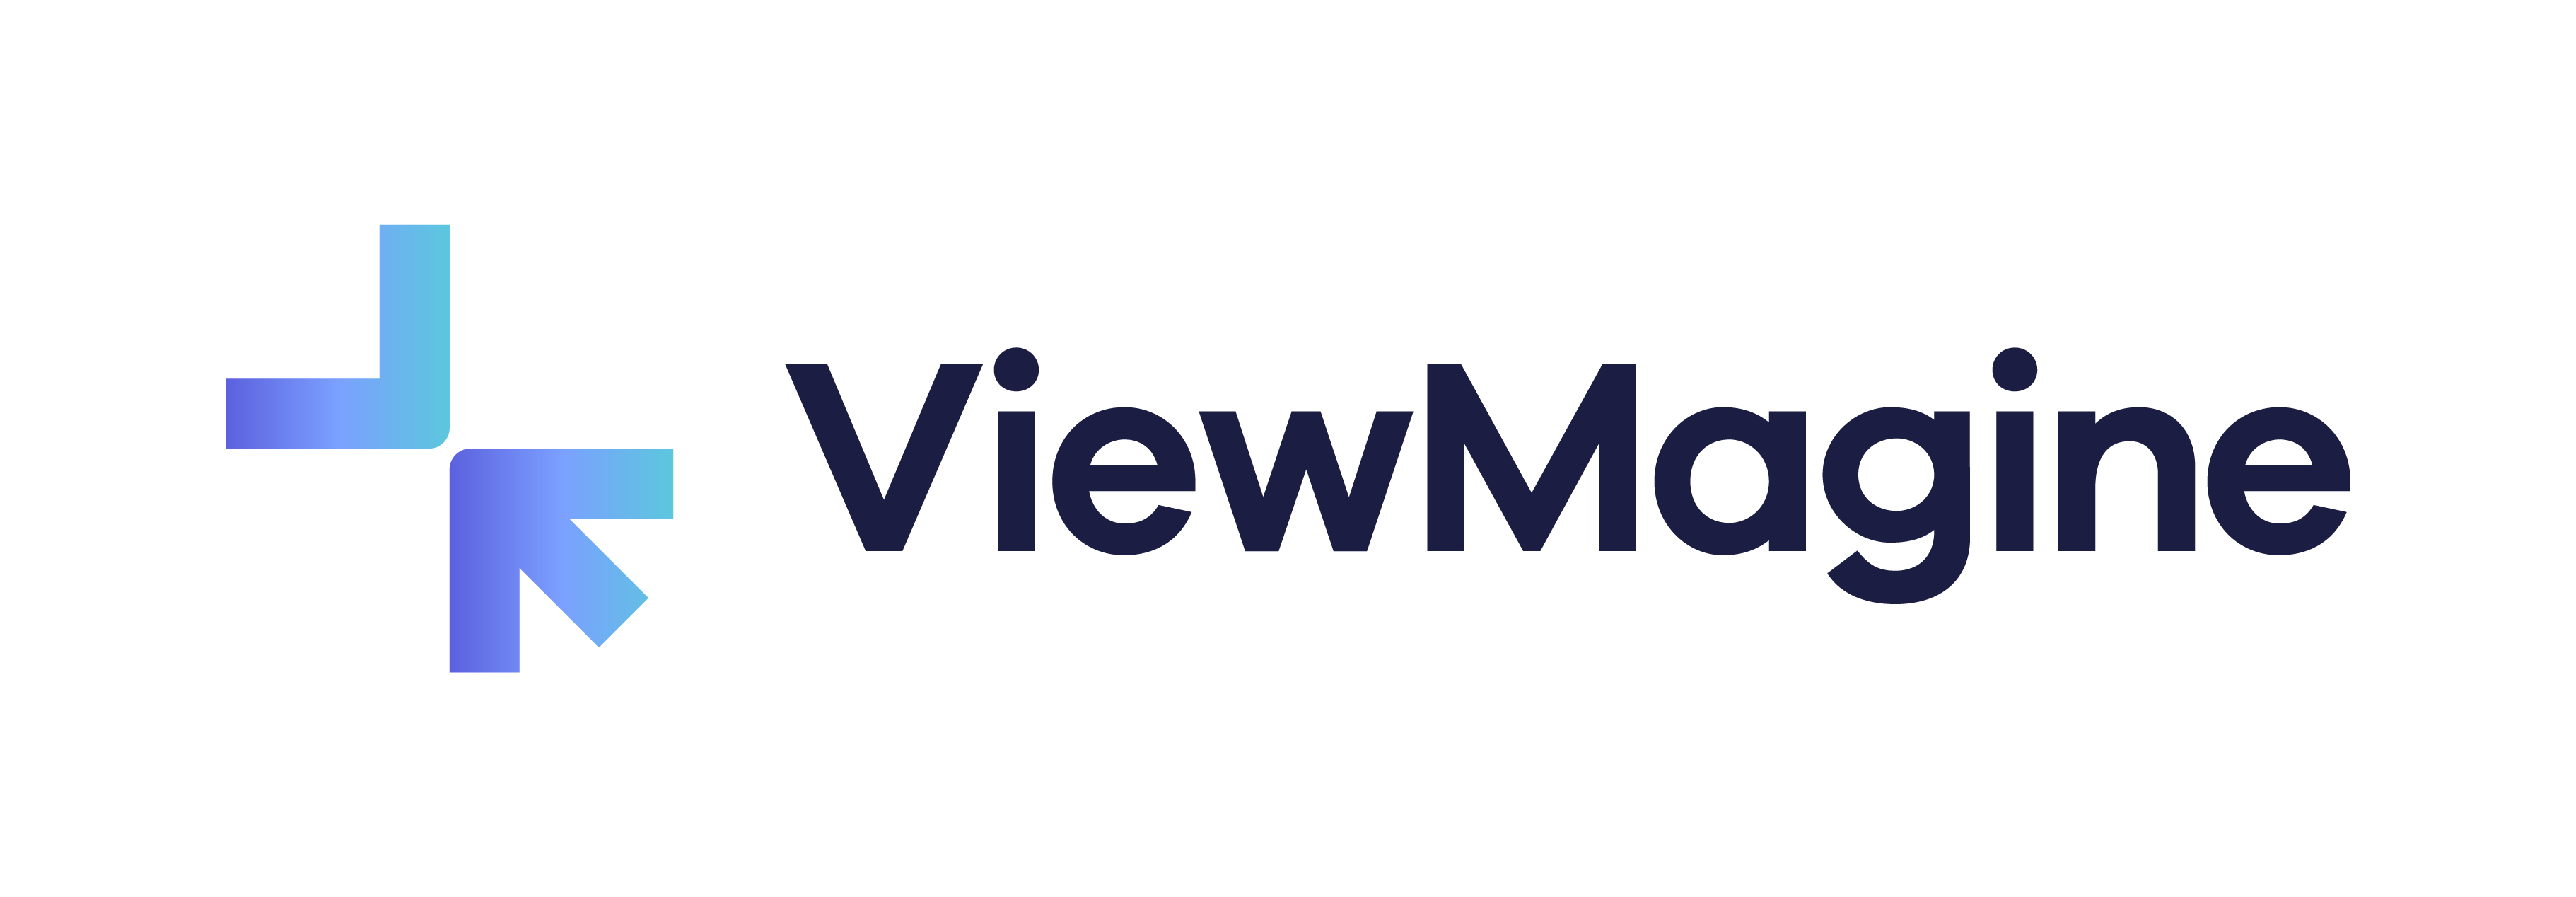 뷰메진/ ViewMagine Logo